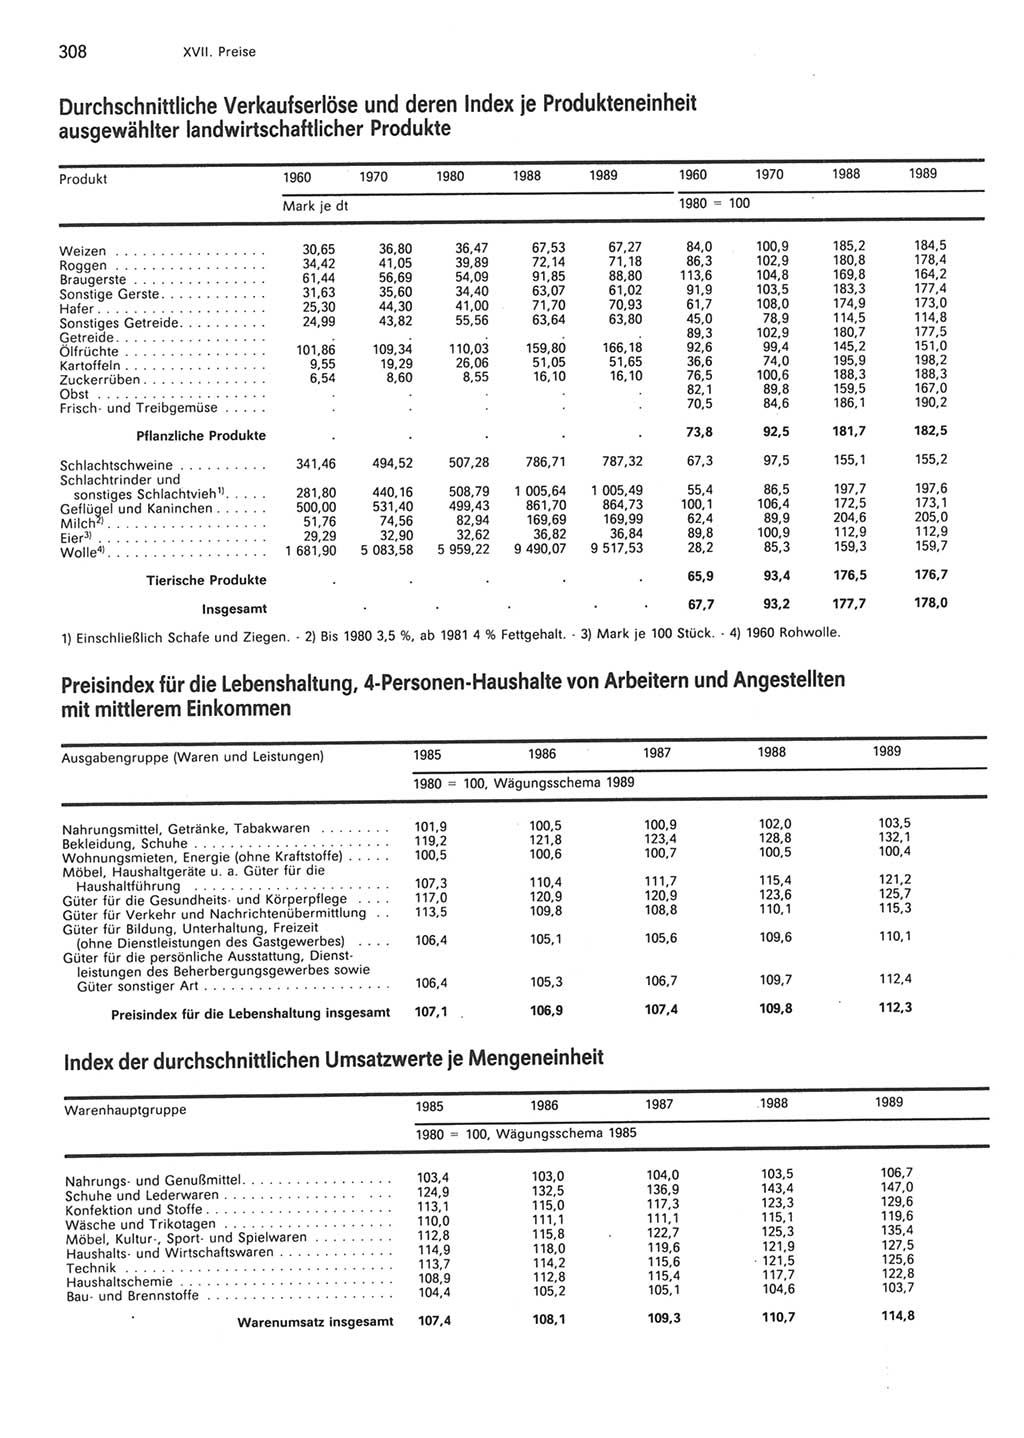 Statistisches Jahrbuch der Deutschen Demokratischen Republik (DDR) 1990, Seite 308 (Stat. Jb. DDR 1990, S. 308)